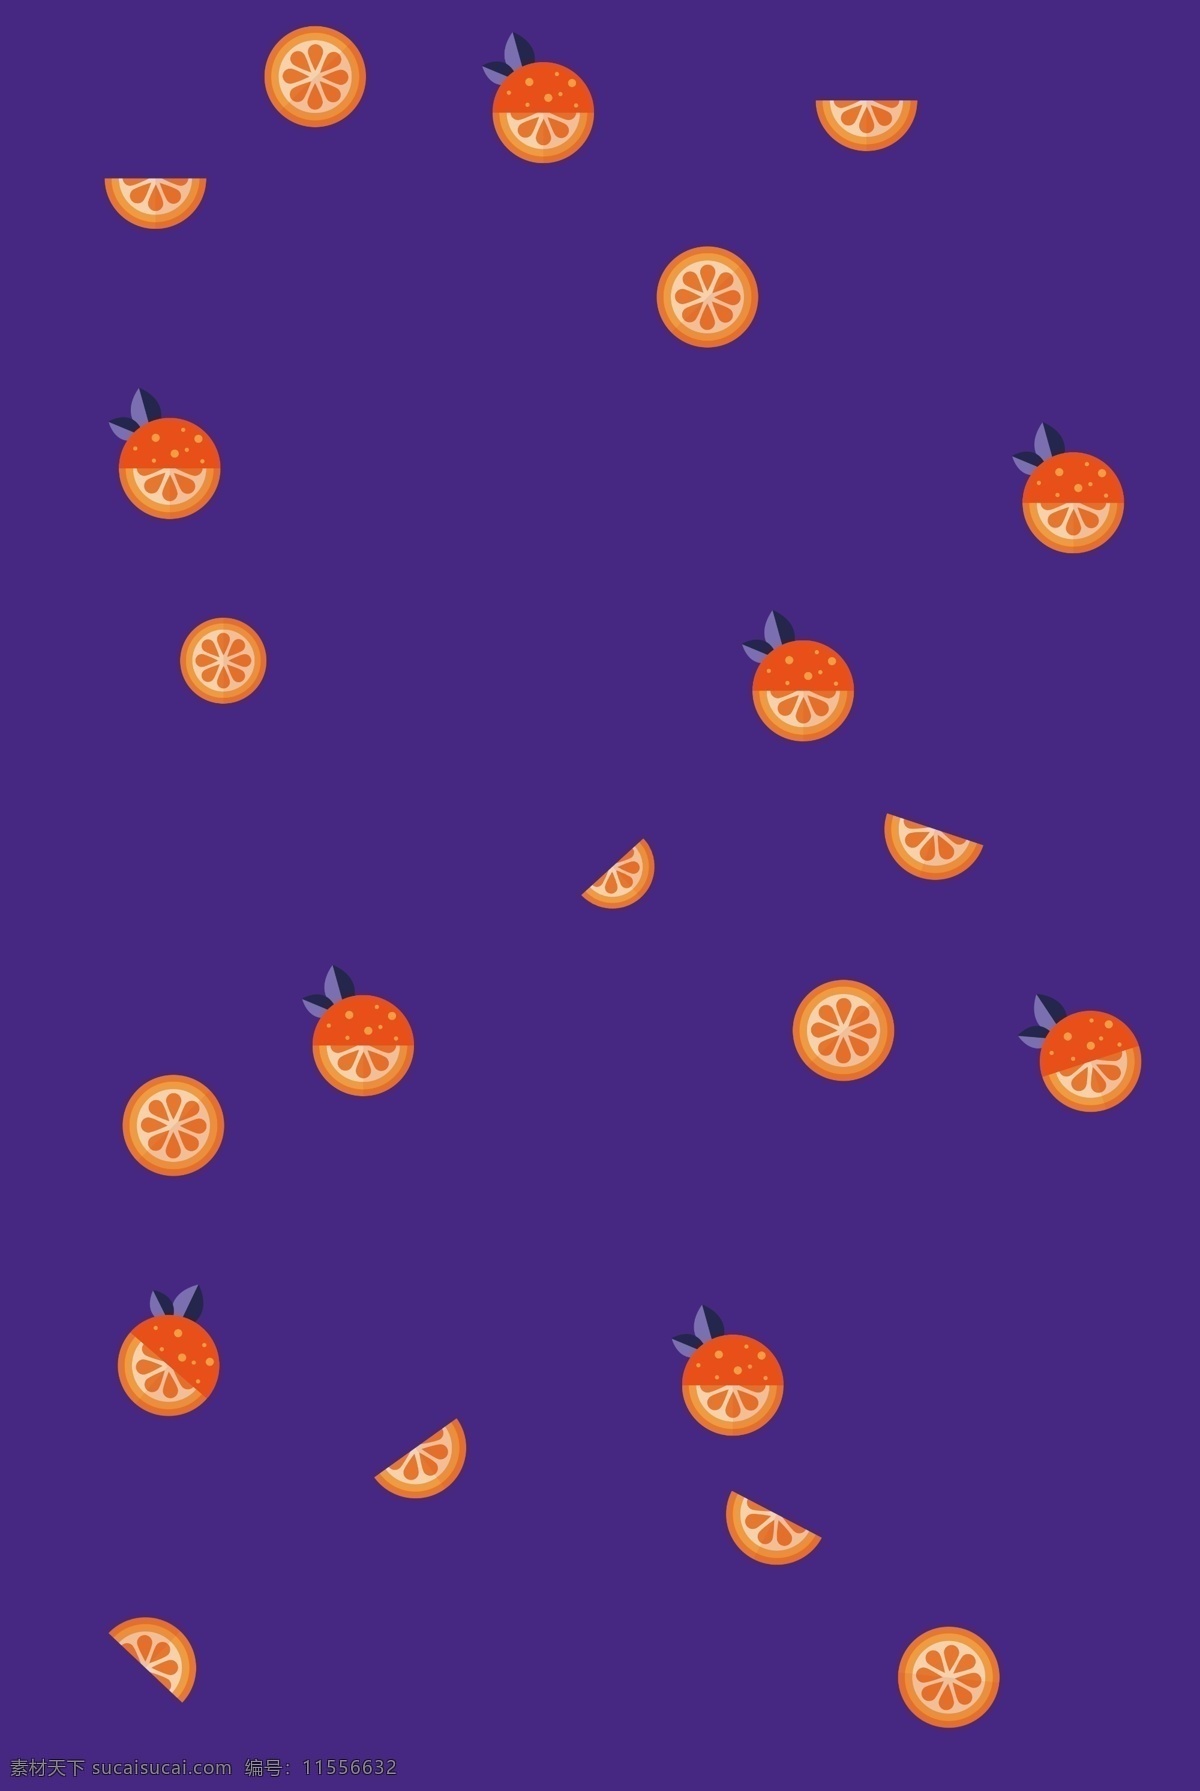 橙子水果背景 橙子 橙色 紫色 广告背景 美容 面膜 果汁 饮品 维c 酸酸甜甜的 高兴 幸福